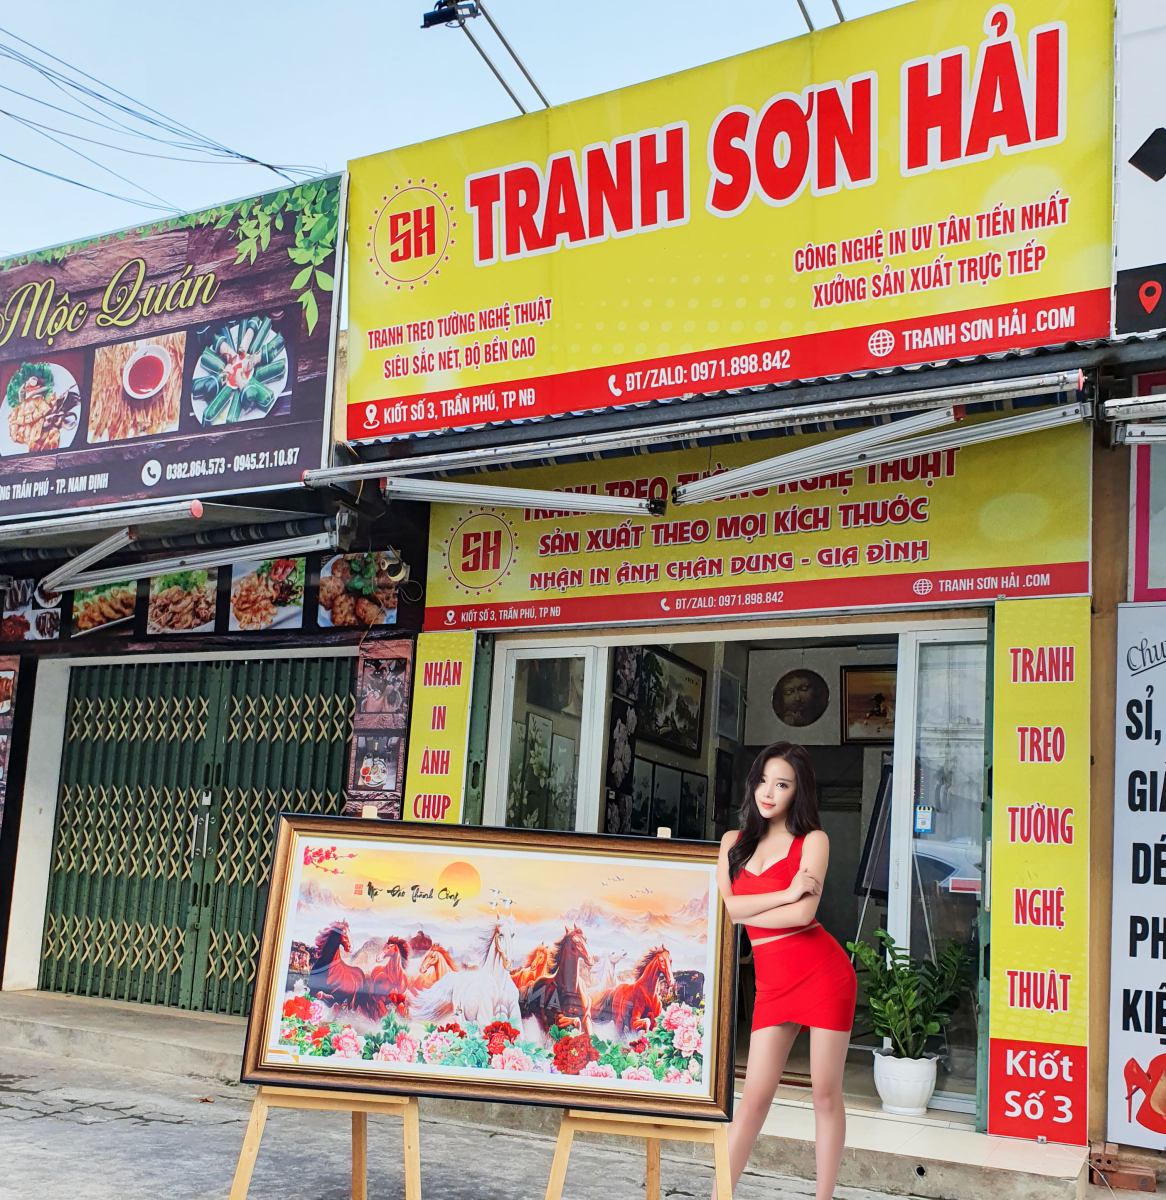 Dịch vụ in biển hiệu cửa hàng hà nội chất lượng, uy tín số 1 tại tranhnamdinh.vn